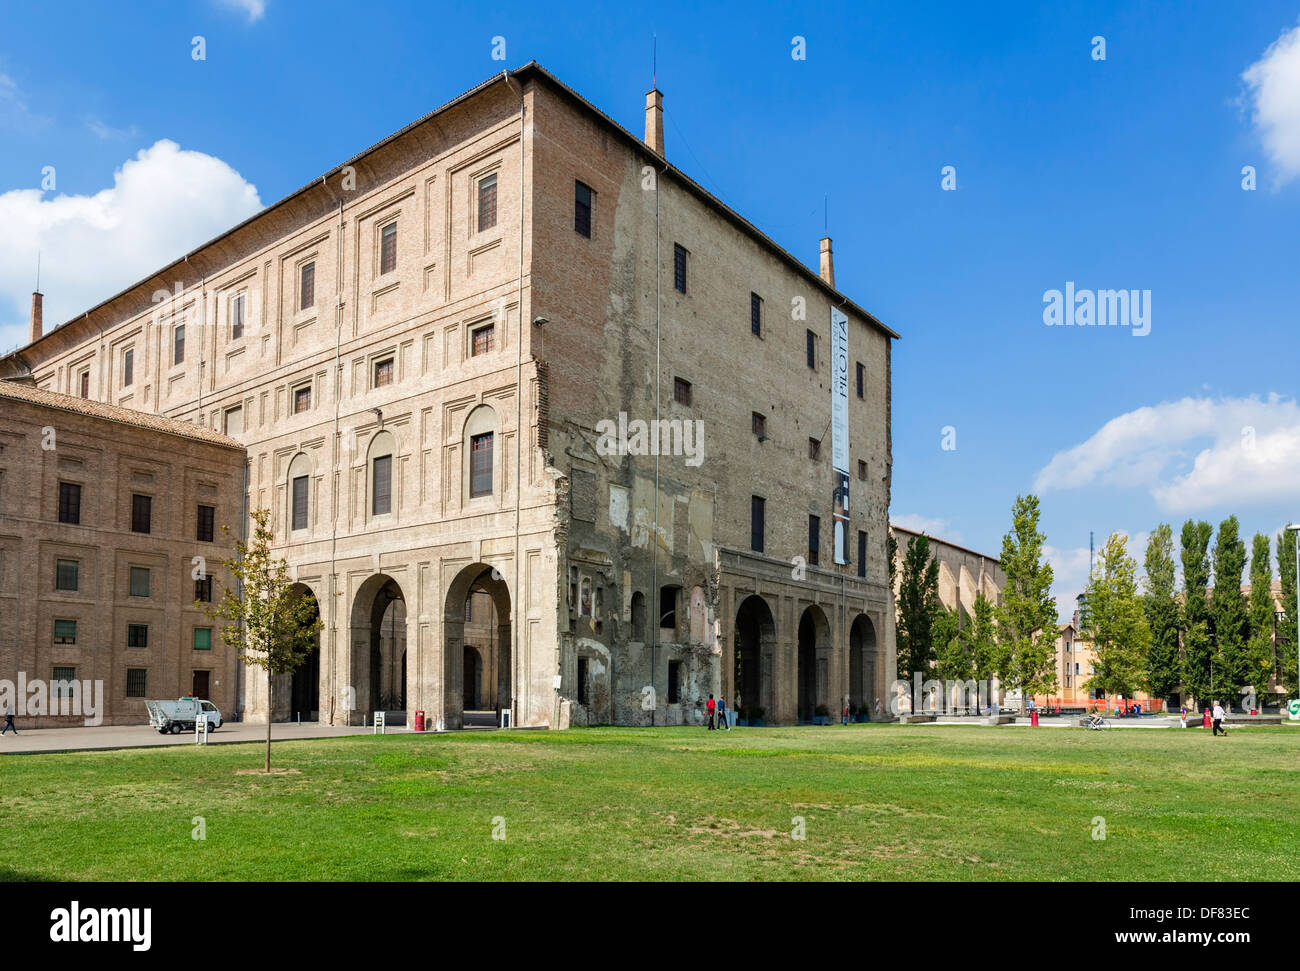 The Palazzo della Pilotta, Parma, Emilia Romagna, Italy Stock Photo